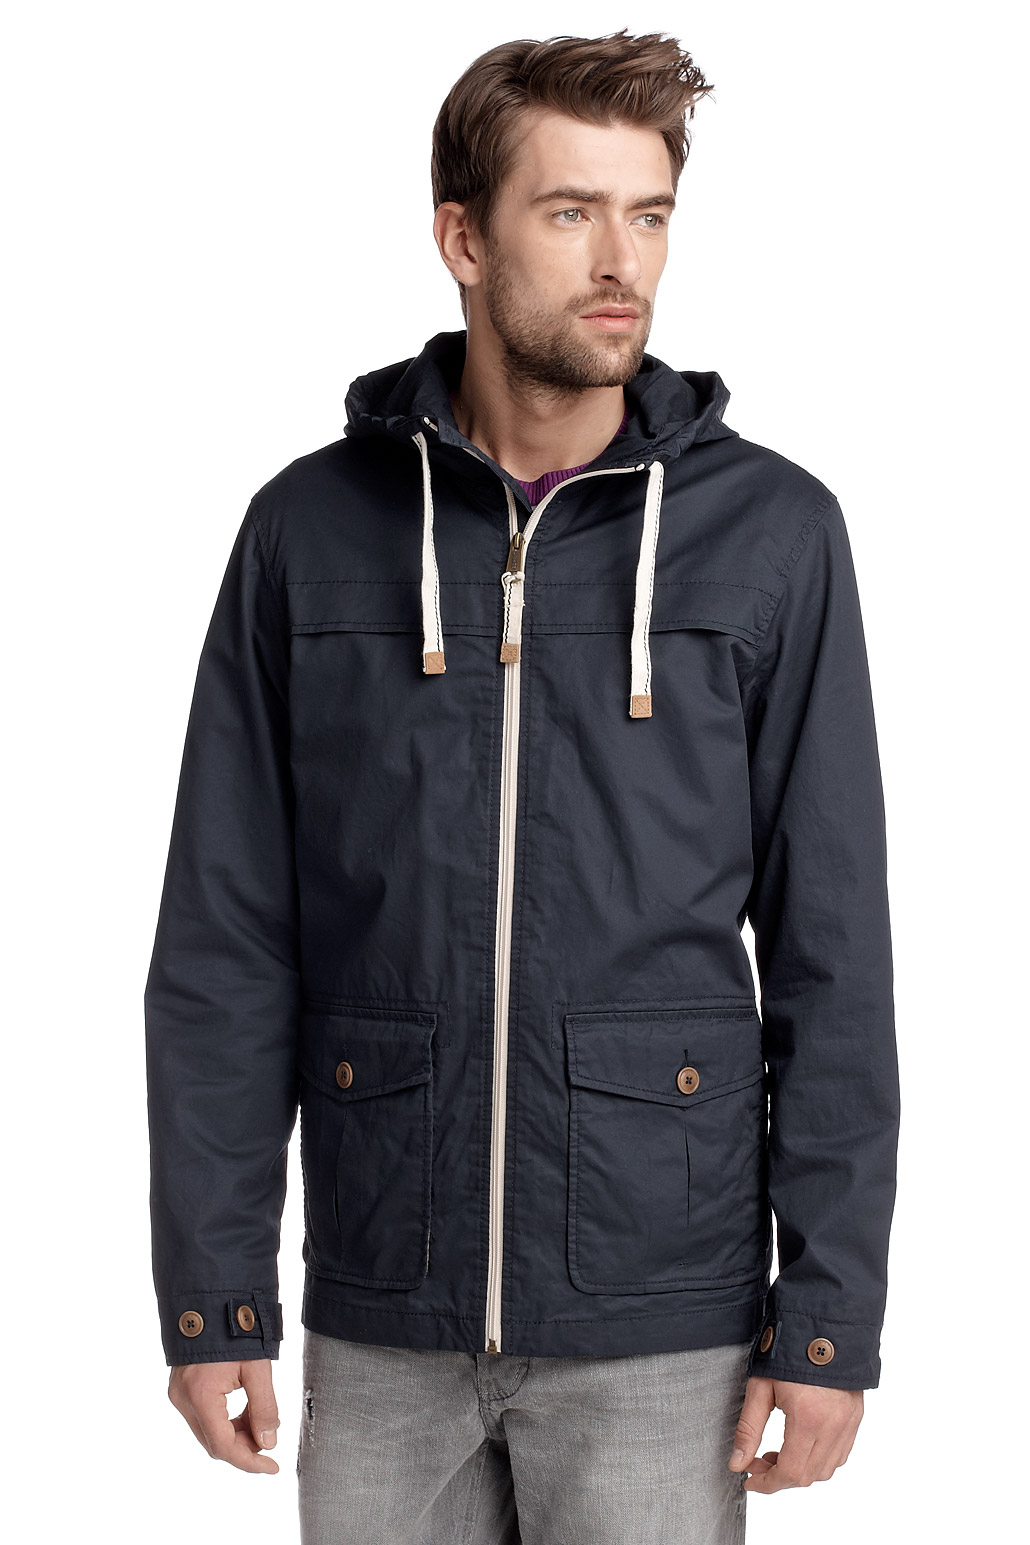 New Esprit Men’s Lightweight Cotton Hooded Jacket Dark Navy & Blue S M L XL